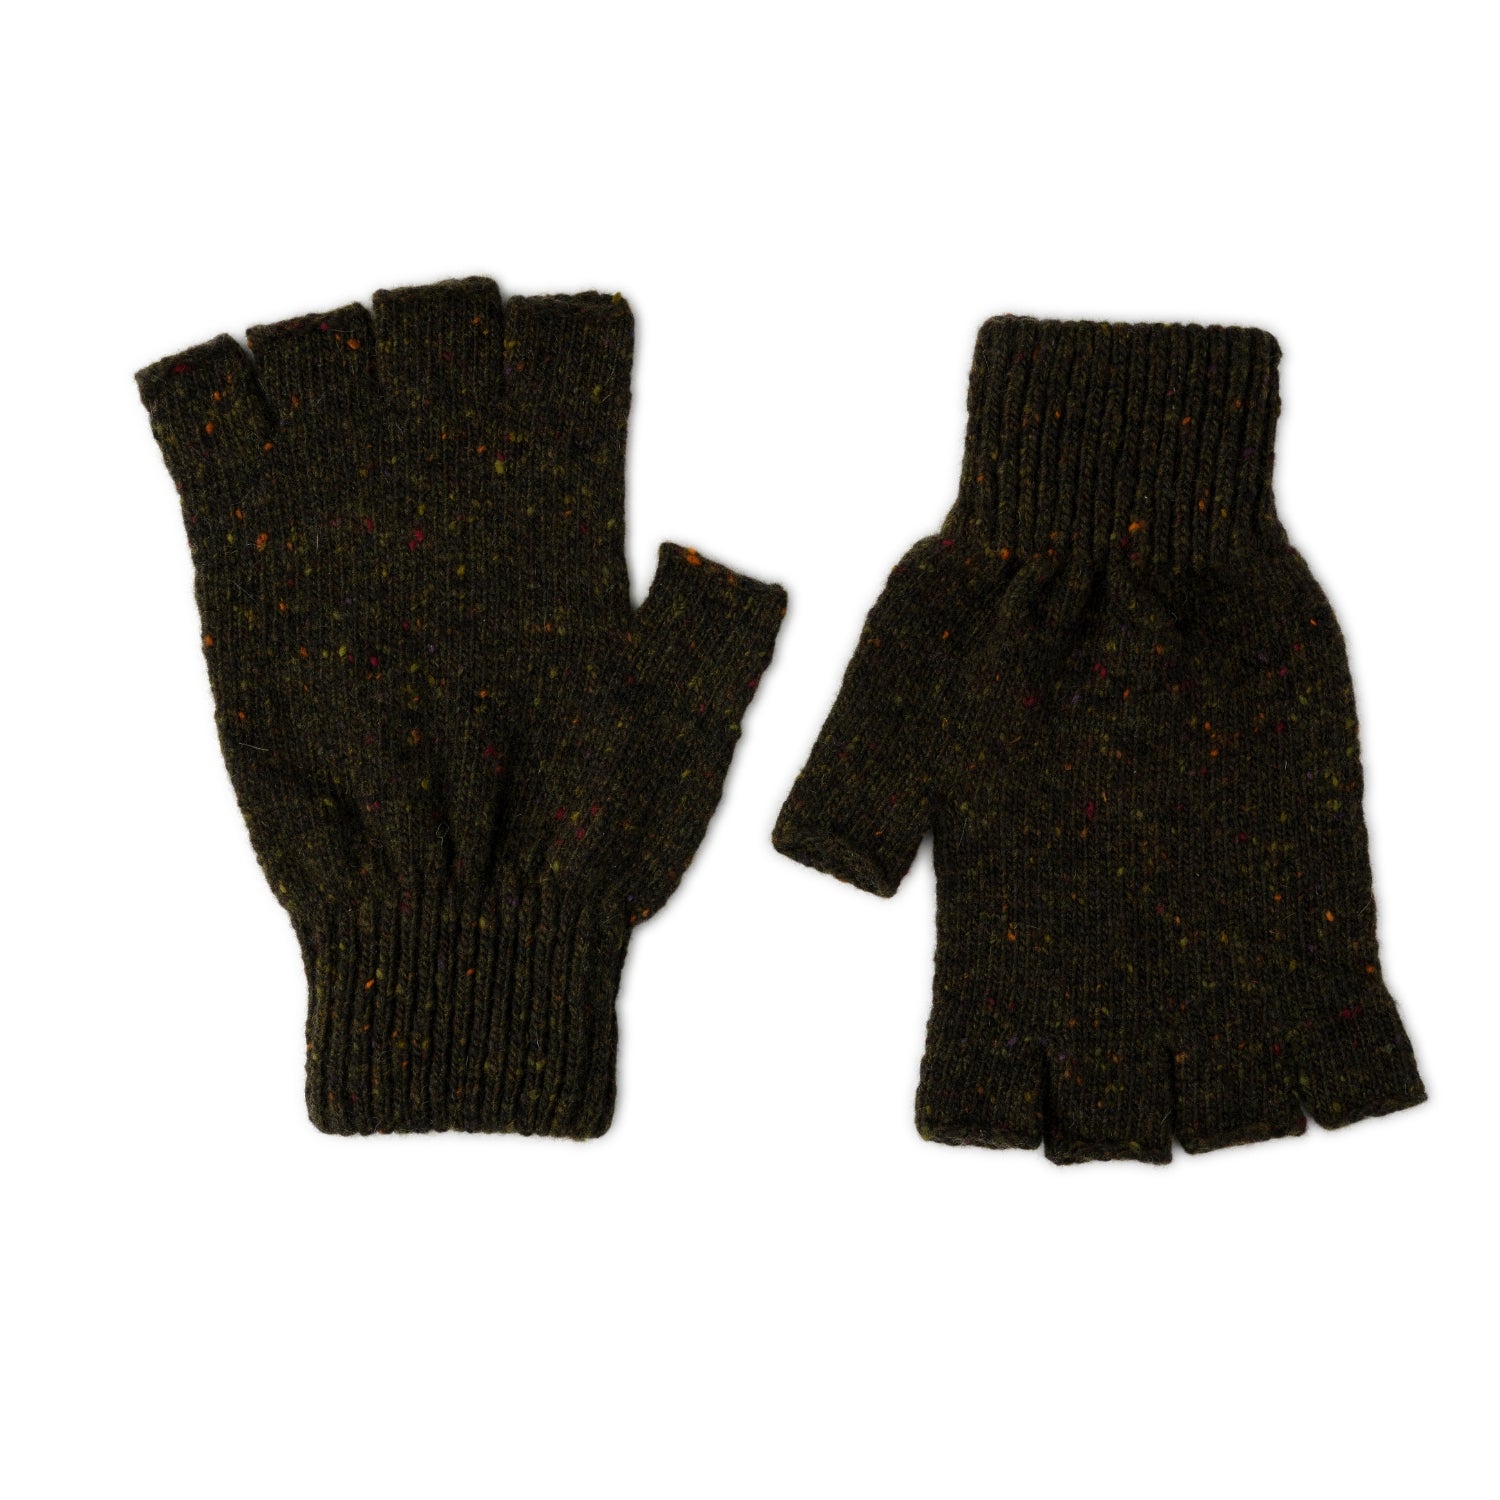 mens wool fingerless gloves - green